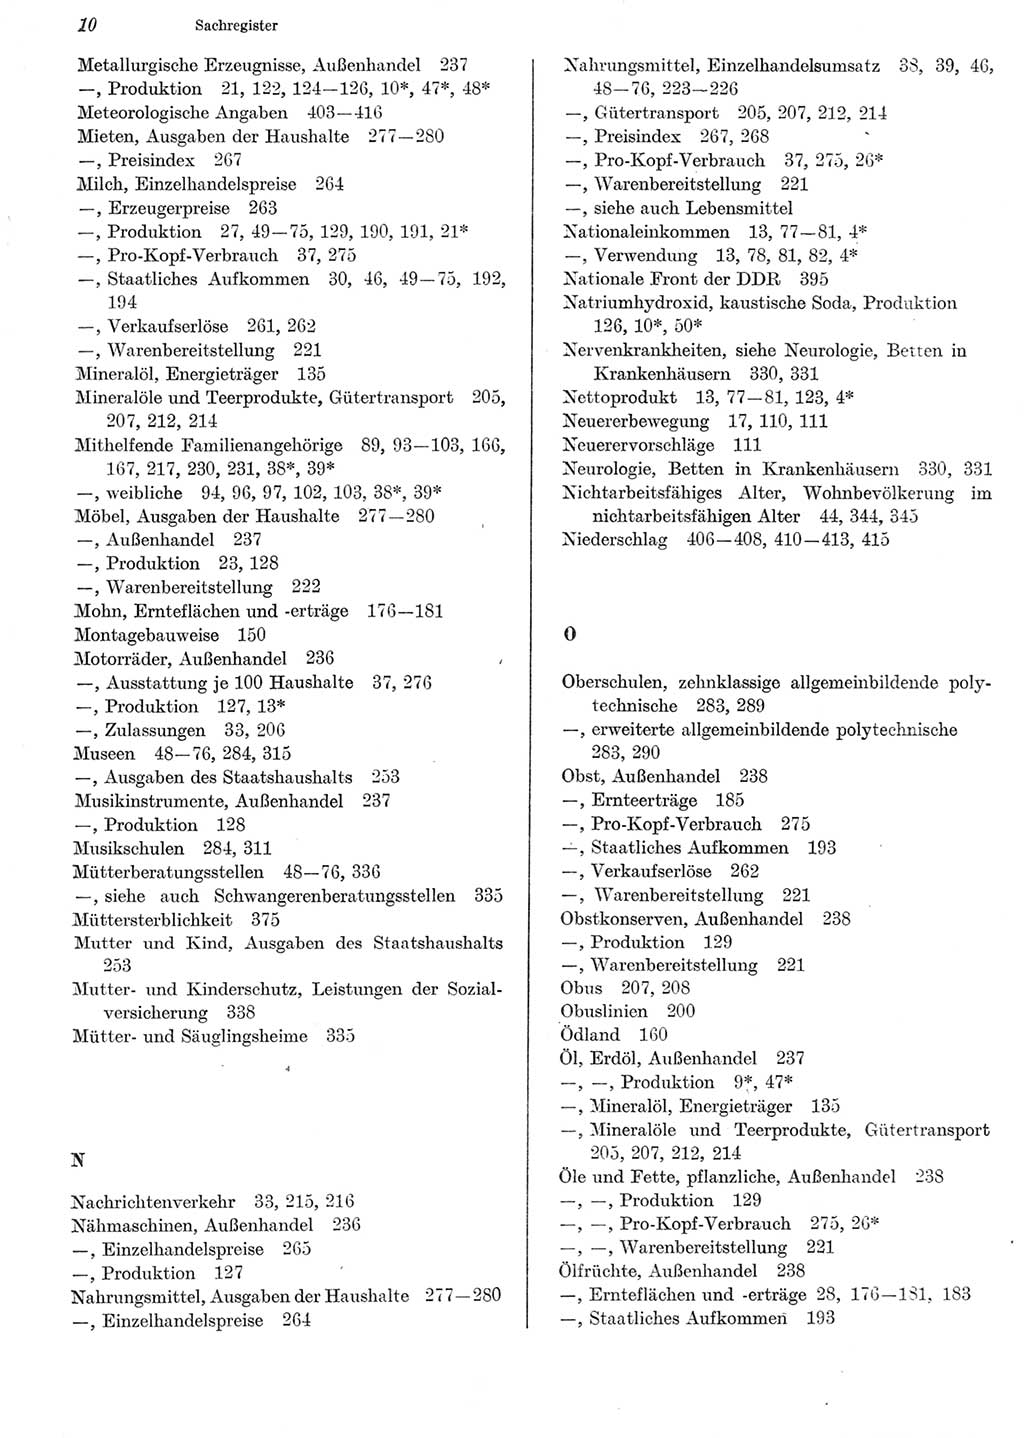 Statistisches Jahrbuch der Deutschen Demokratischen Republik (DDR) 1981, Seite 10 (Stat. Jb. DDR 1981, S. 10)